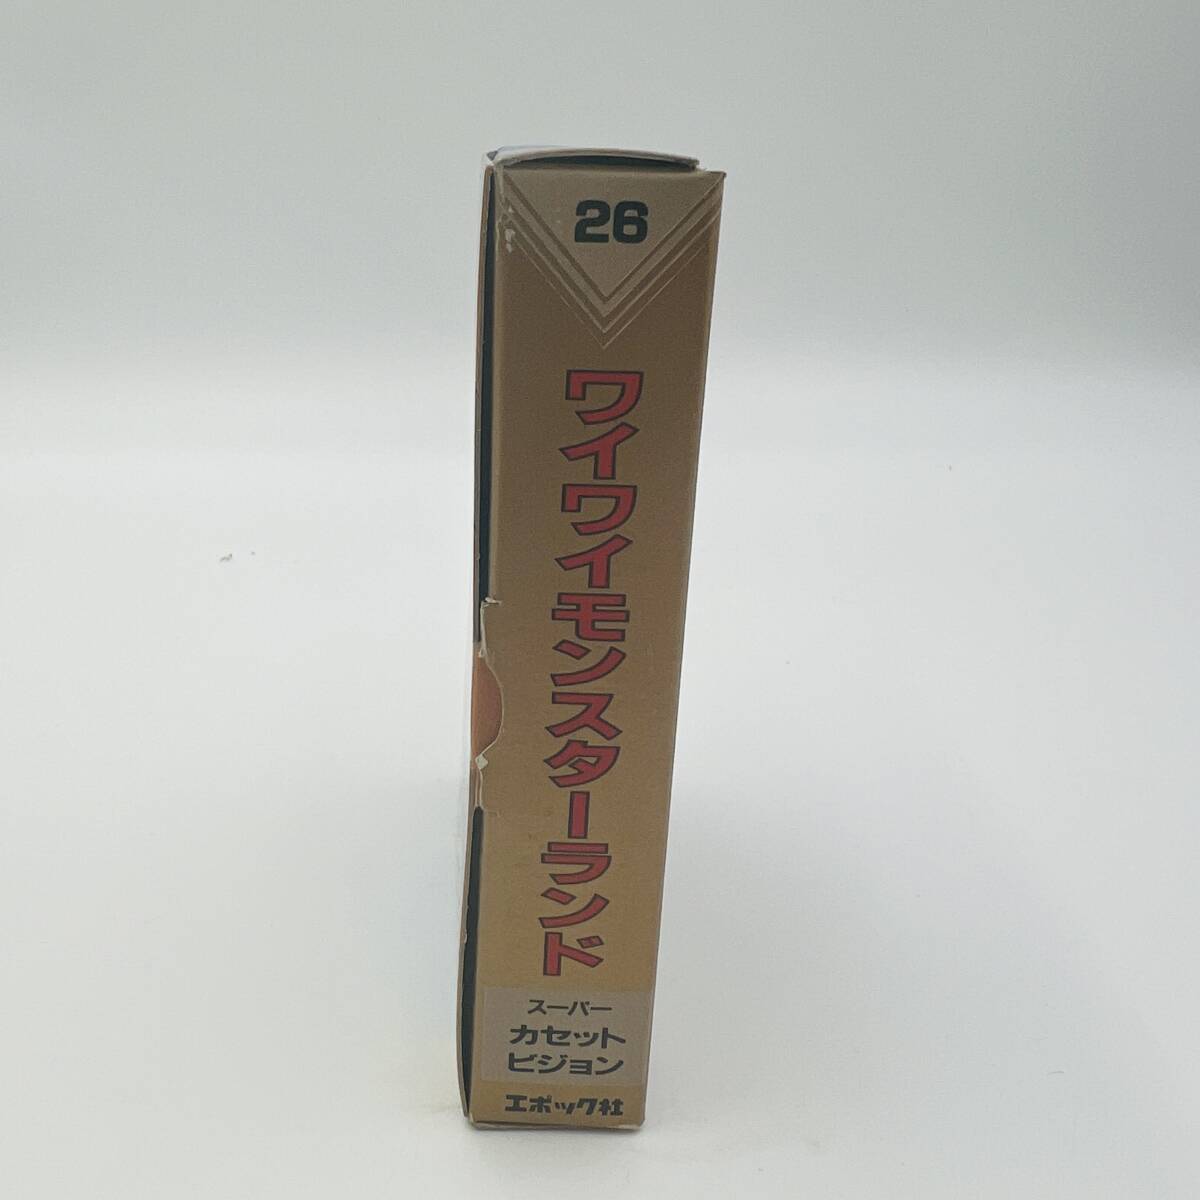 [408E] не использовался товар super кассета Vision soft waiwai Monstar Land коробка с руководством пользователя Epo k фирма TV игра игрушка магазин ликвидация запасов товар 